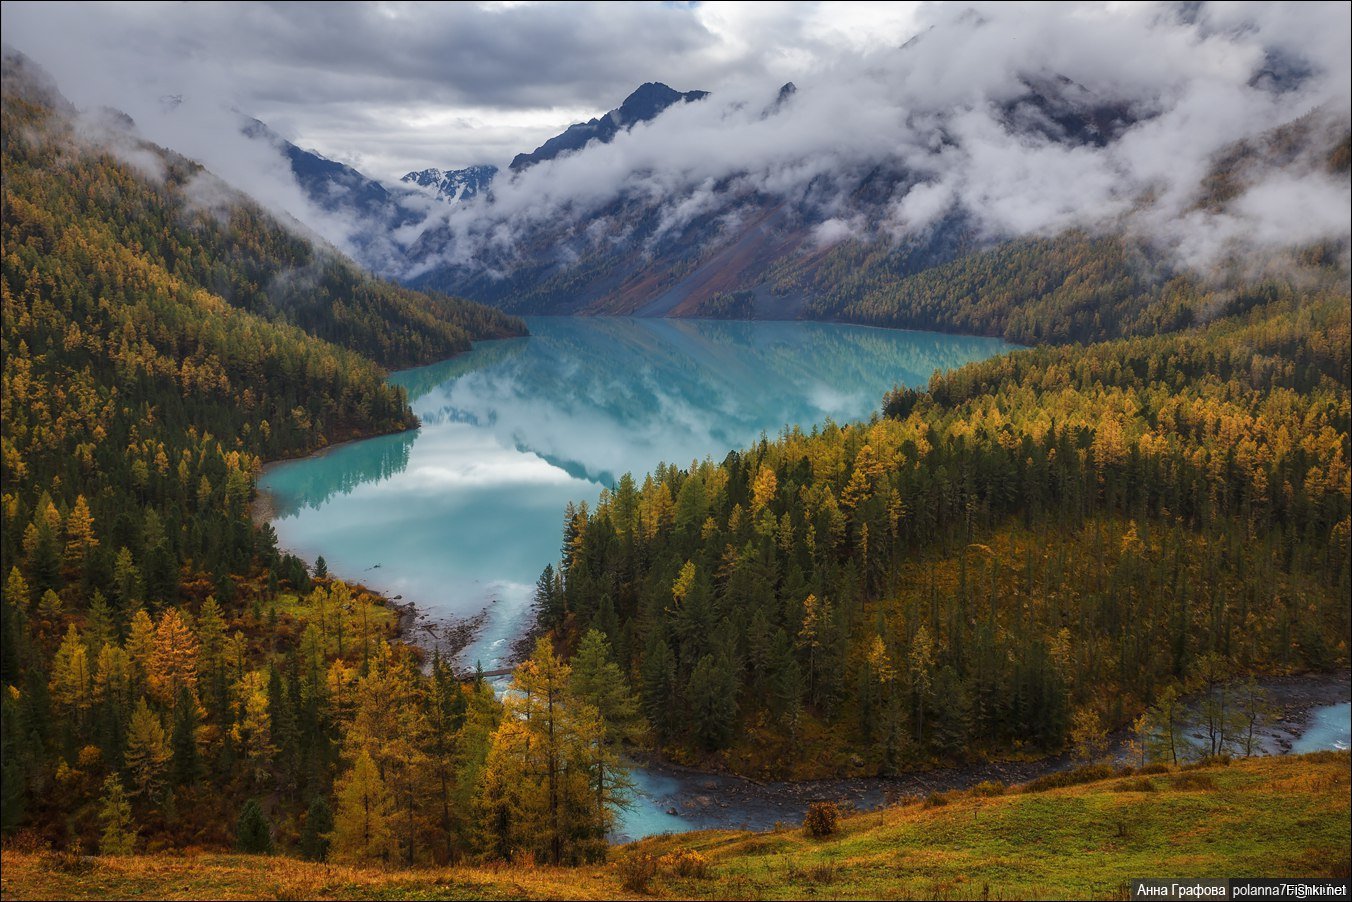 Кучерлинское озеро. Кучерлинское озеро Алтай. Озеро Кучерла горный Алтай. Озеро Кучерла, Алтайские горы. Кушалиноское озеро Алтай.